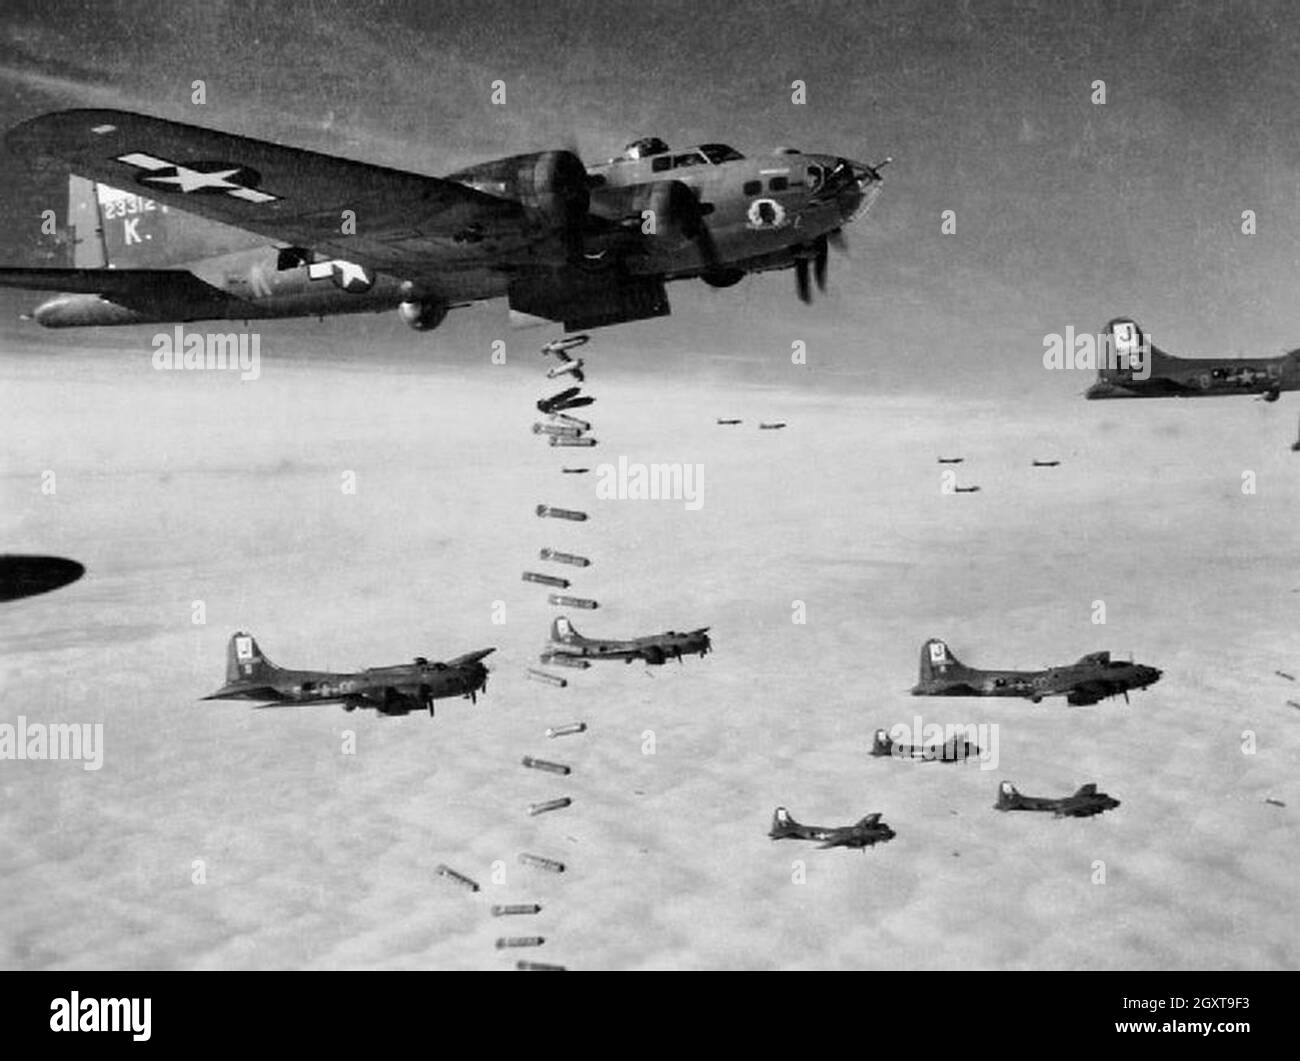 Boeing B-17 Flying Fortress bombardamenti area città tedesche bombardamento via radar durante la campagna combinata di bombardamento strategico alleato. L'USAF bombardato di giorno e la RAF bombardato di notte. Foto Stock